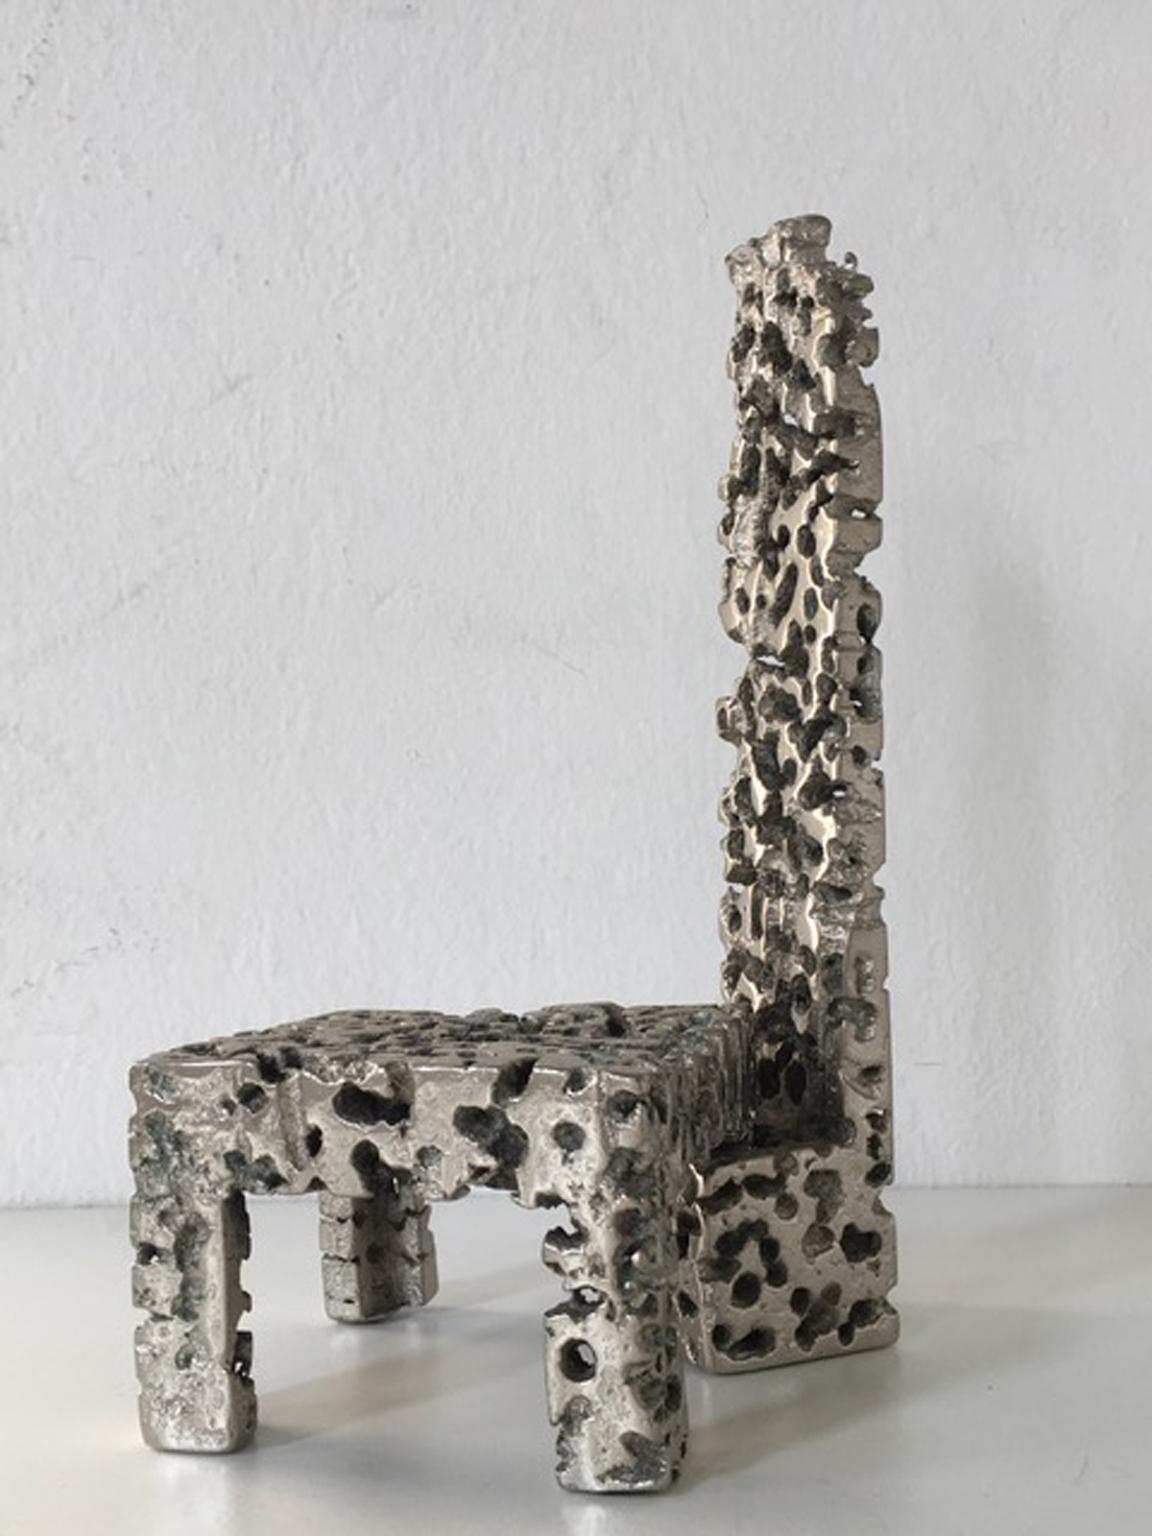 Urano Palma est un artiste italien qui commence à créer ses œuvres d'art en suivant la philosophie de Lucio Fontana.
Il a spécialement travaillé sur les meubles sculptés, inventant une technique de fonte pour obtenir le métal plein perforé.
La